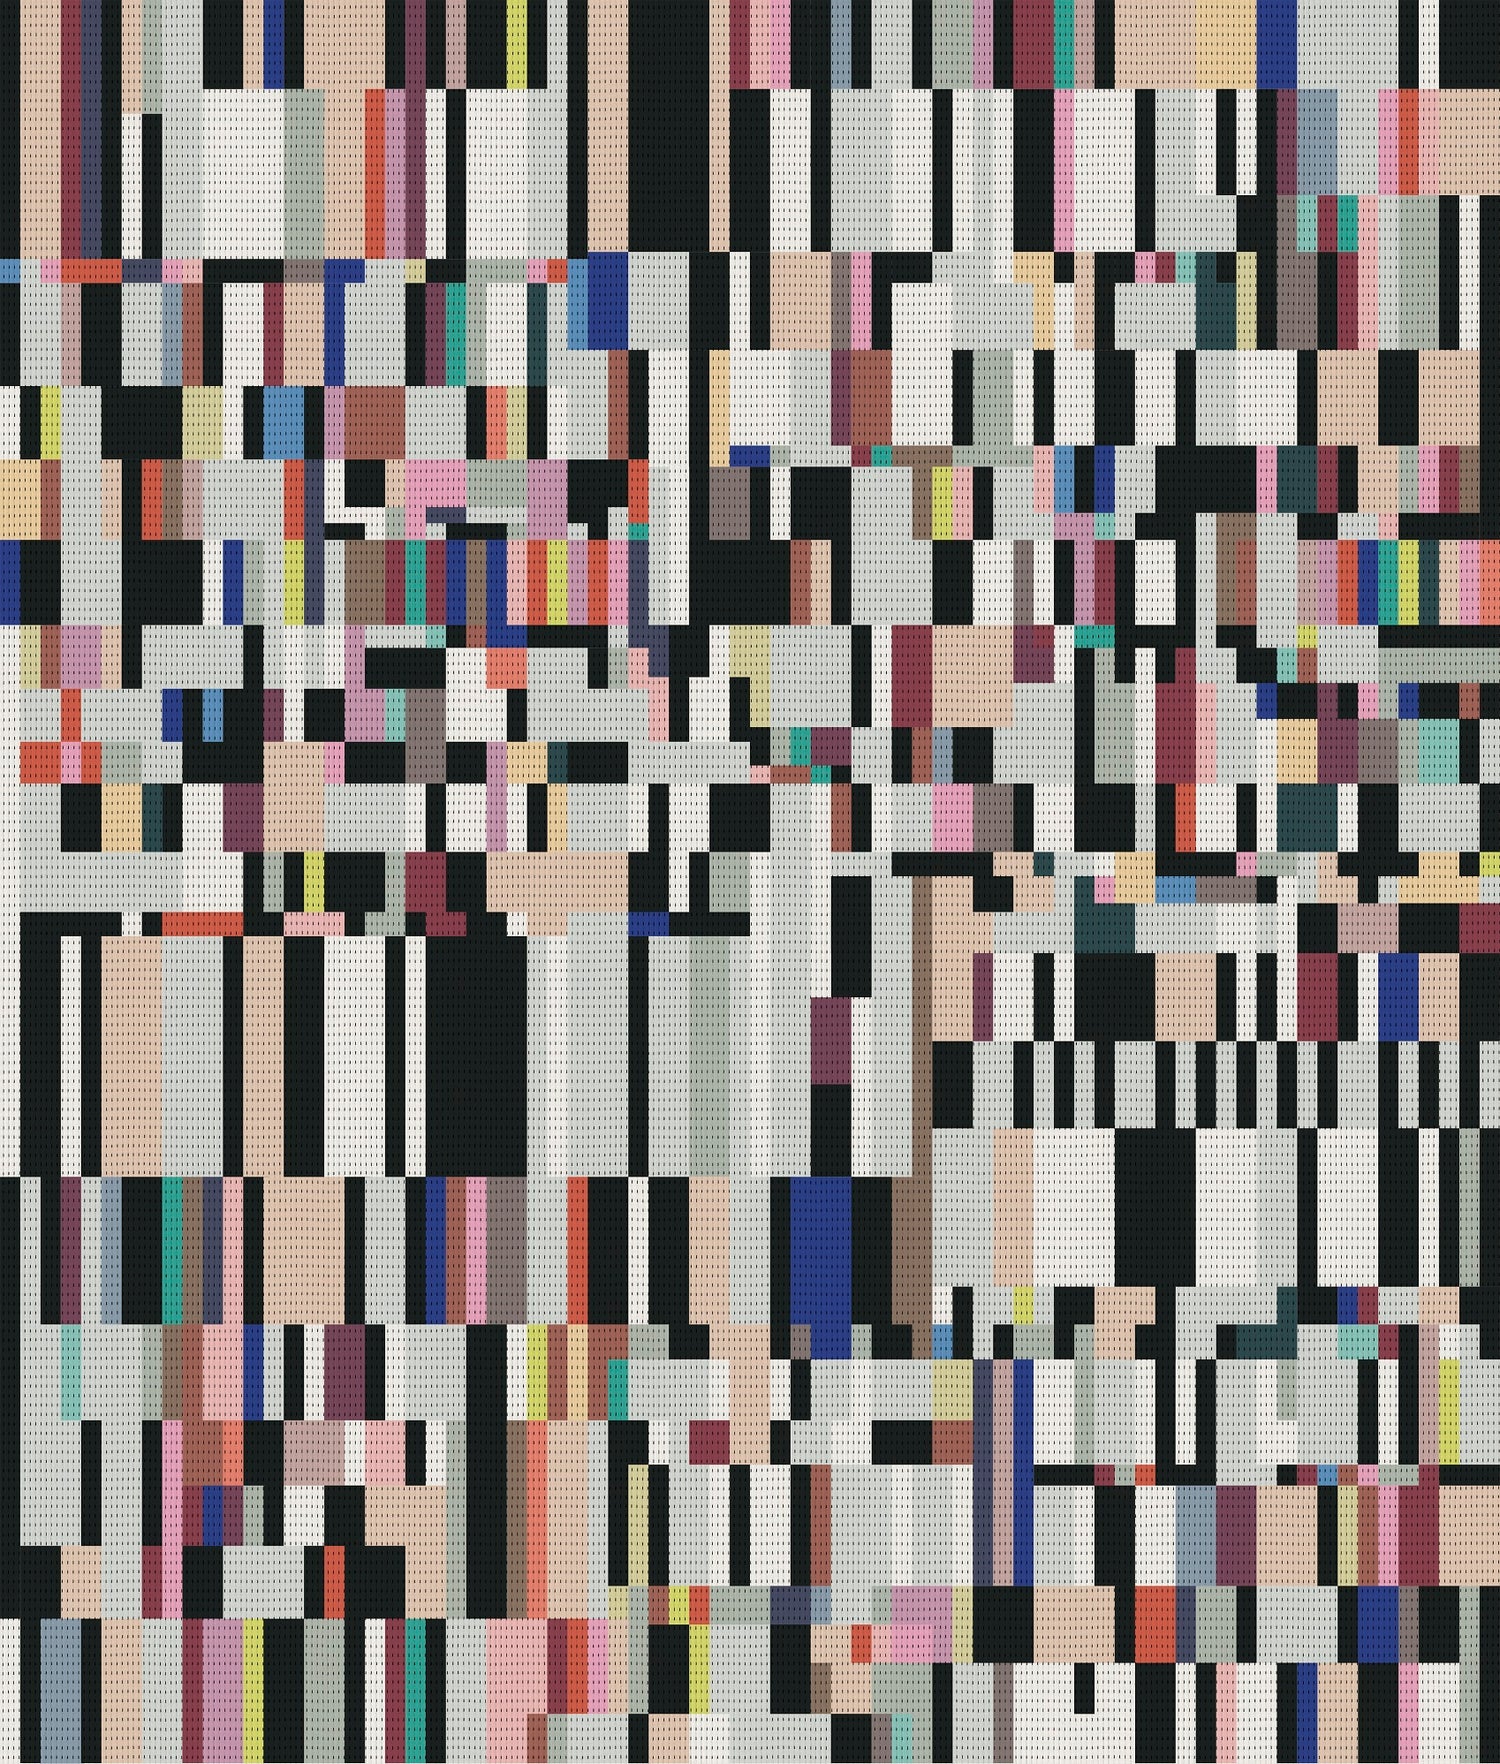 Designtex Pixel 3826-901 Color Bar, Large